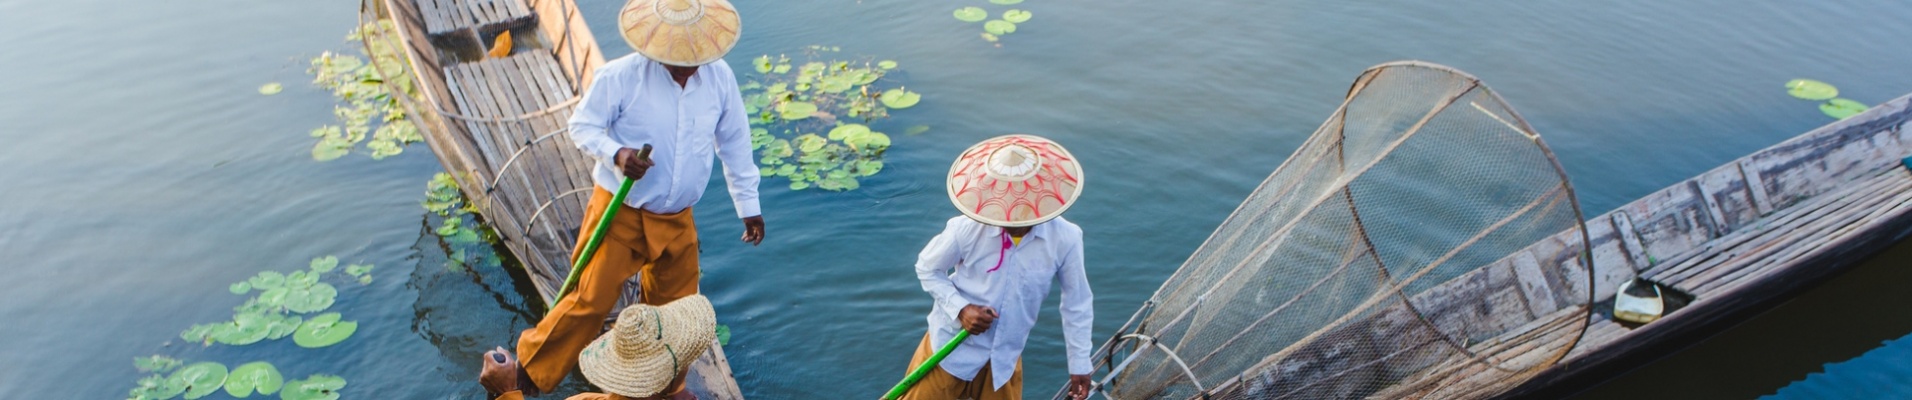 Pêcheurs traditionnels sur le lac Inle, Birmanie